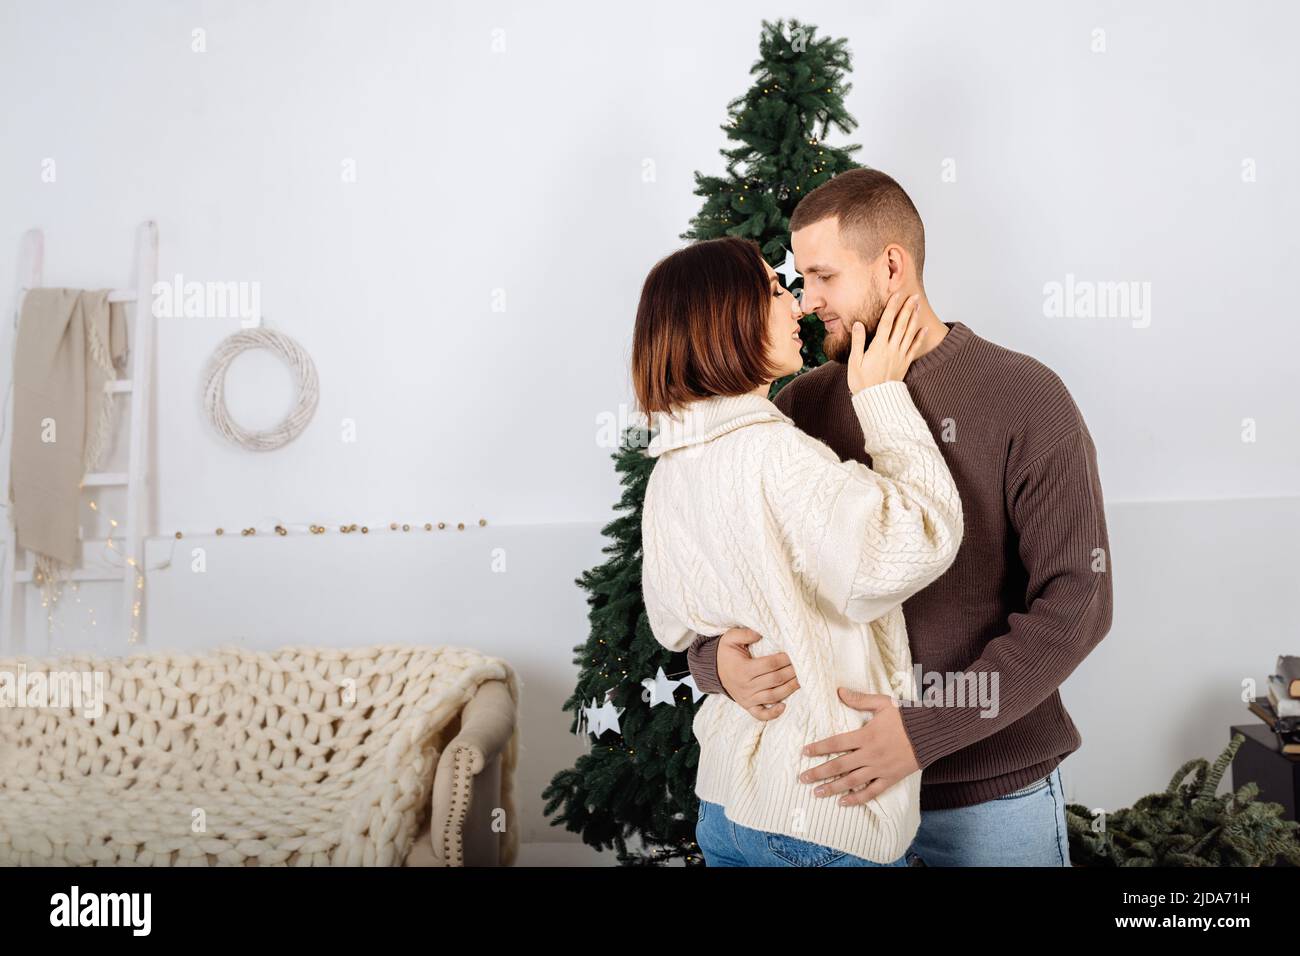 Beau jeune élégant couple, homme et femme, en pull blanc et brun dans les bras de l'autre sur le fond de l'arbre de Noël célébrer Noël à la maison. Minimalisme scandinave. Banque D'Images